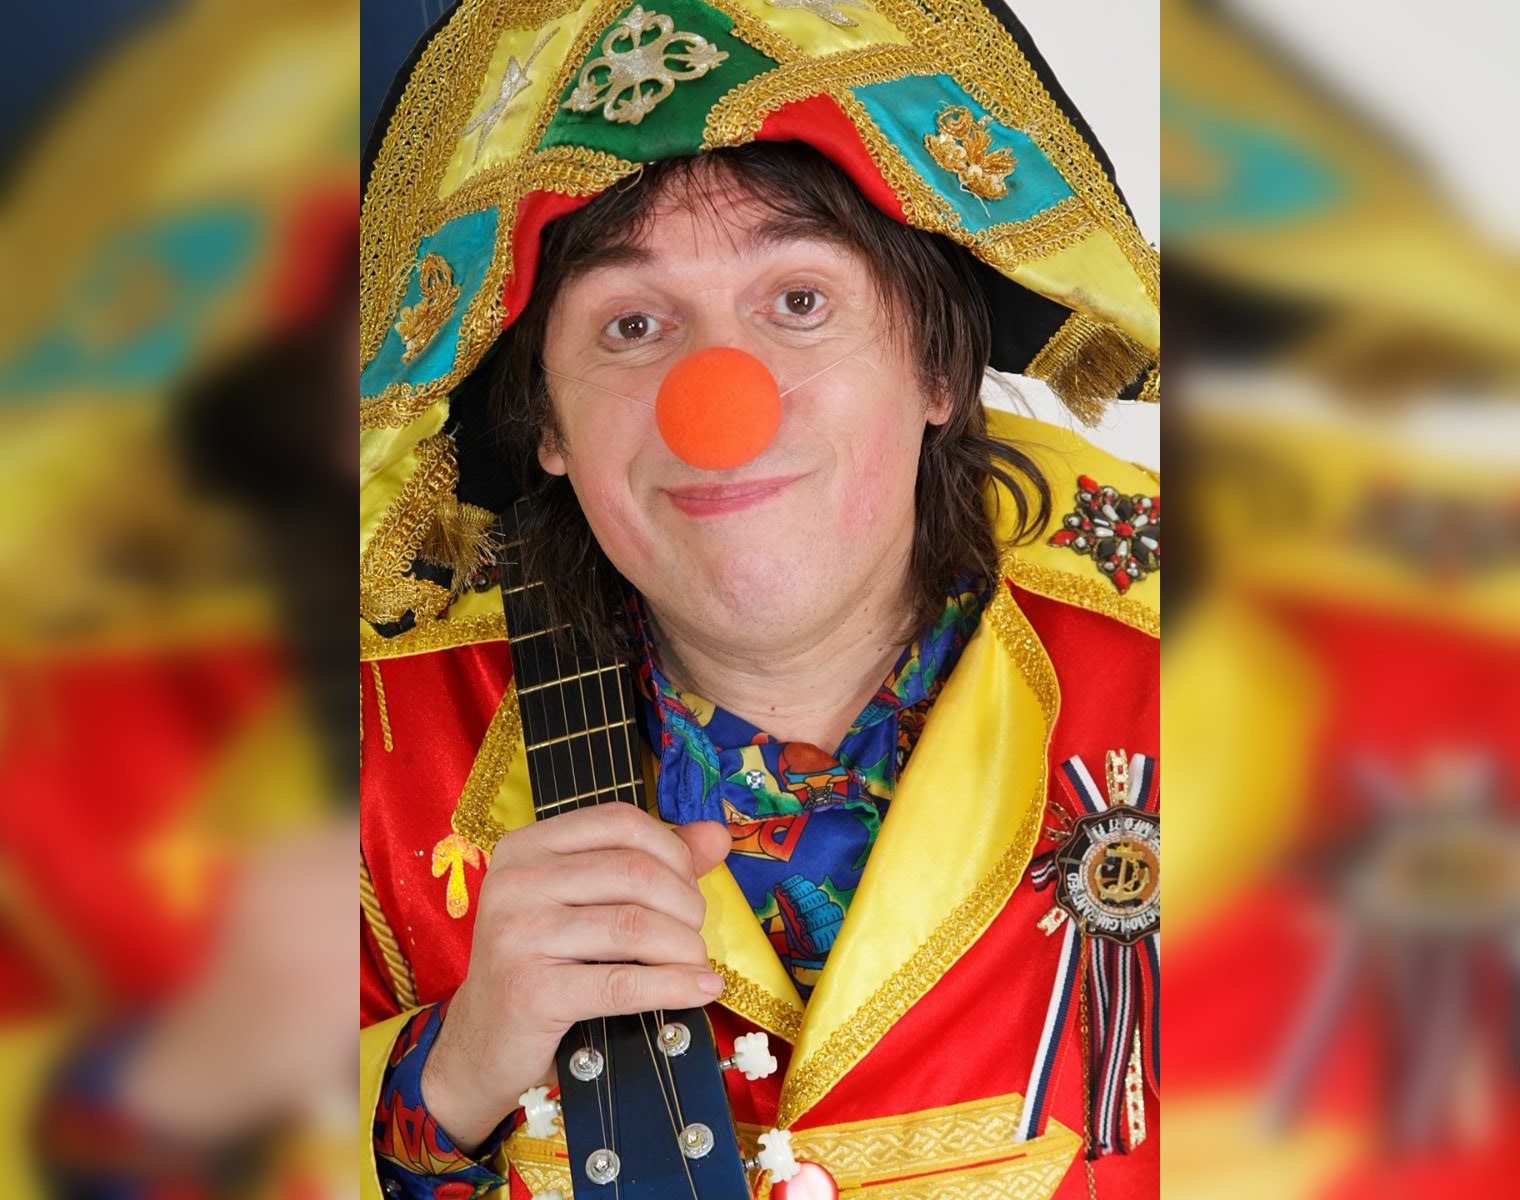 Лжеследователи развели детского клоуна на 4 млн рублей фейковым судом